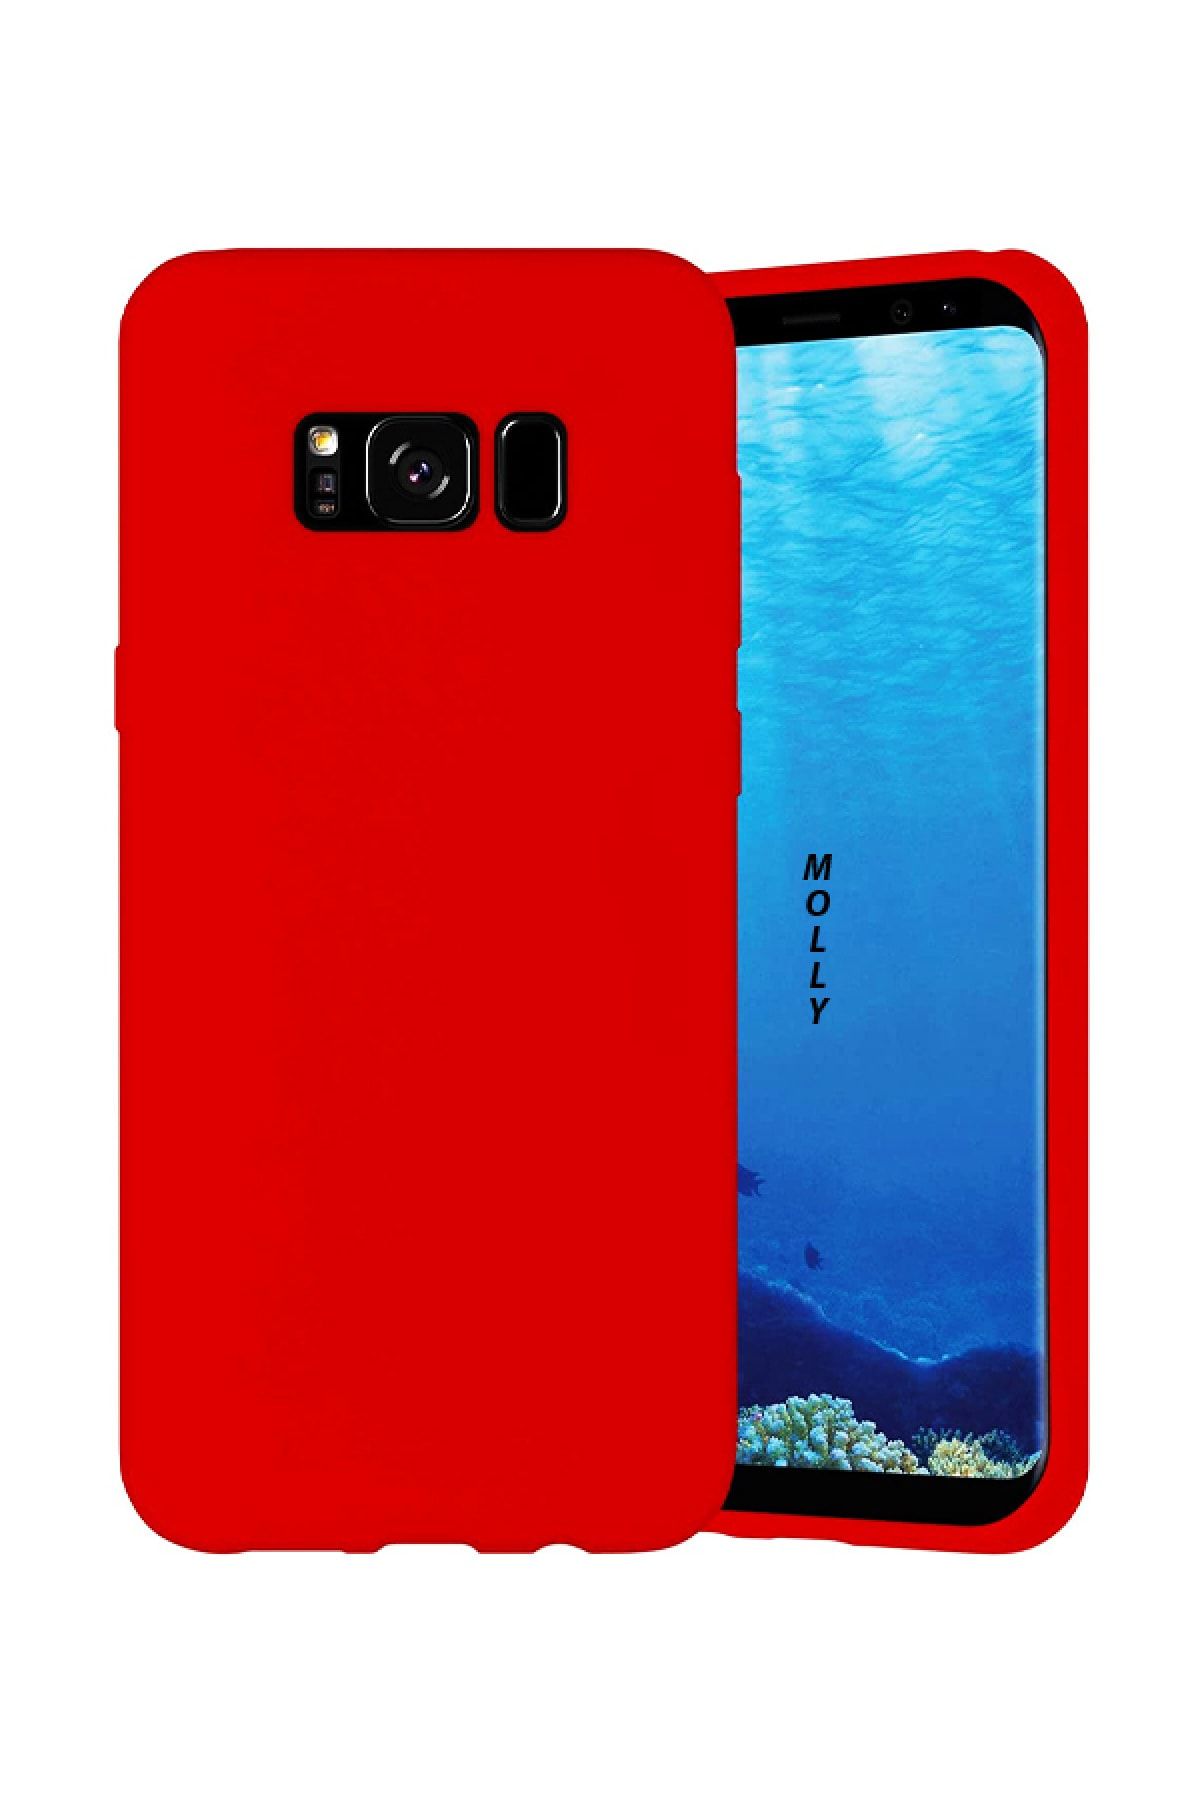 Molly Galaxy S8 Uyumlu Şeker Kırmızısı Liquid Pastel Kılıf